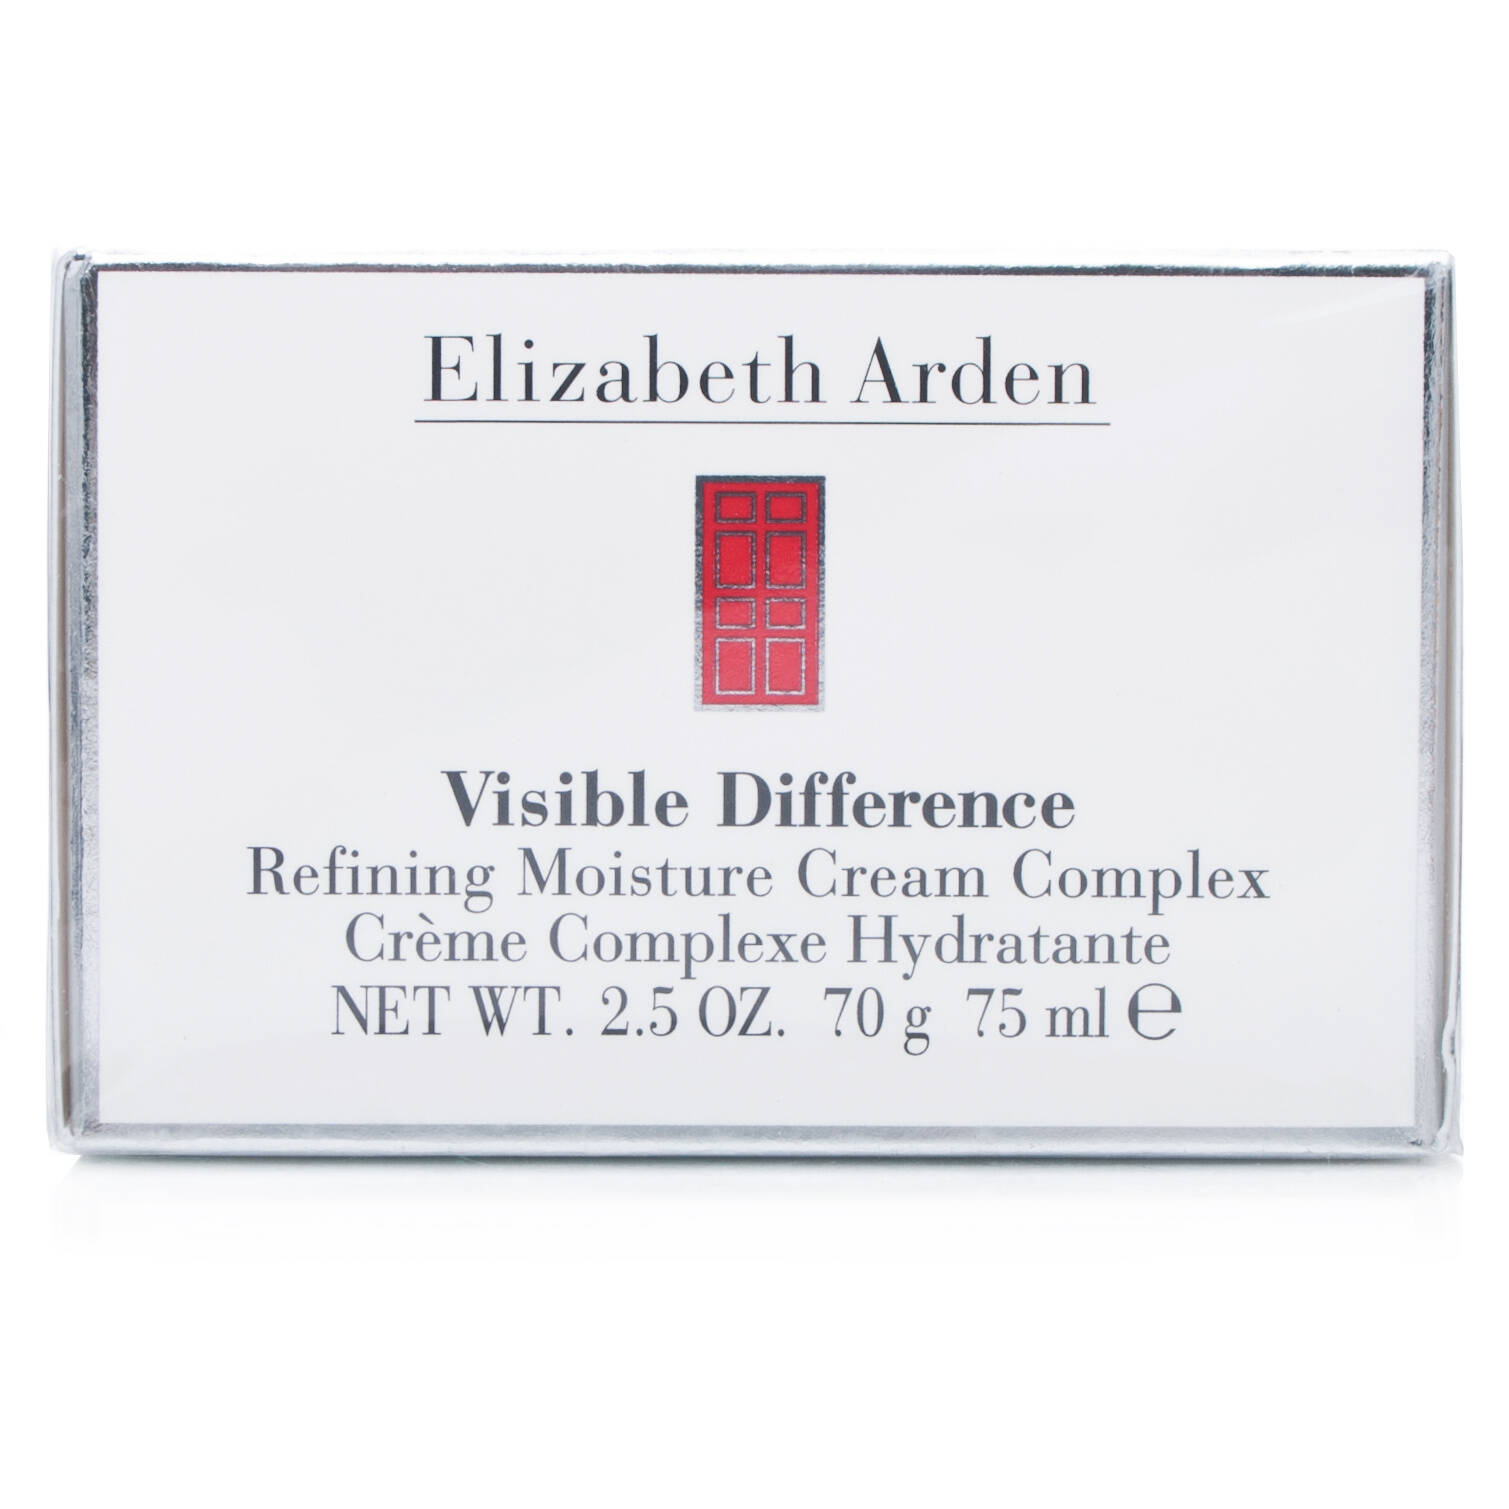 Elizabeth Arden Visible Difference Refining Moisture Cream